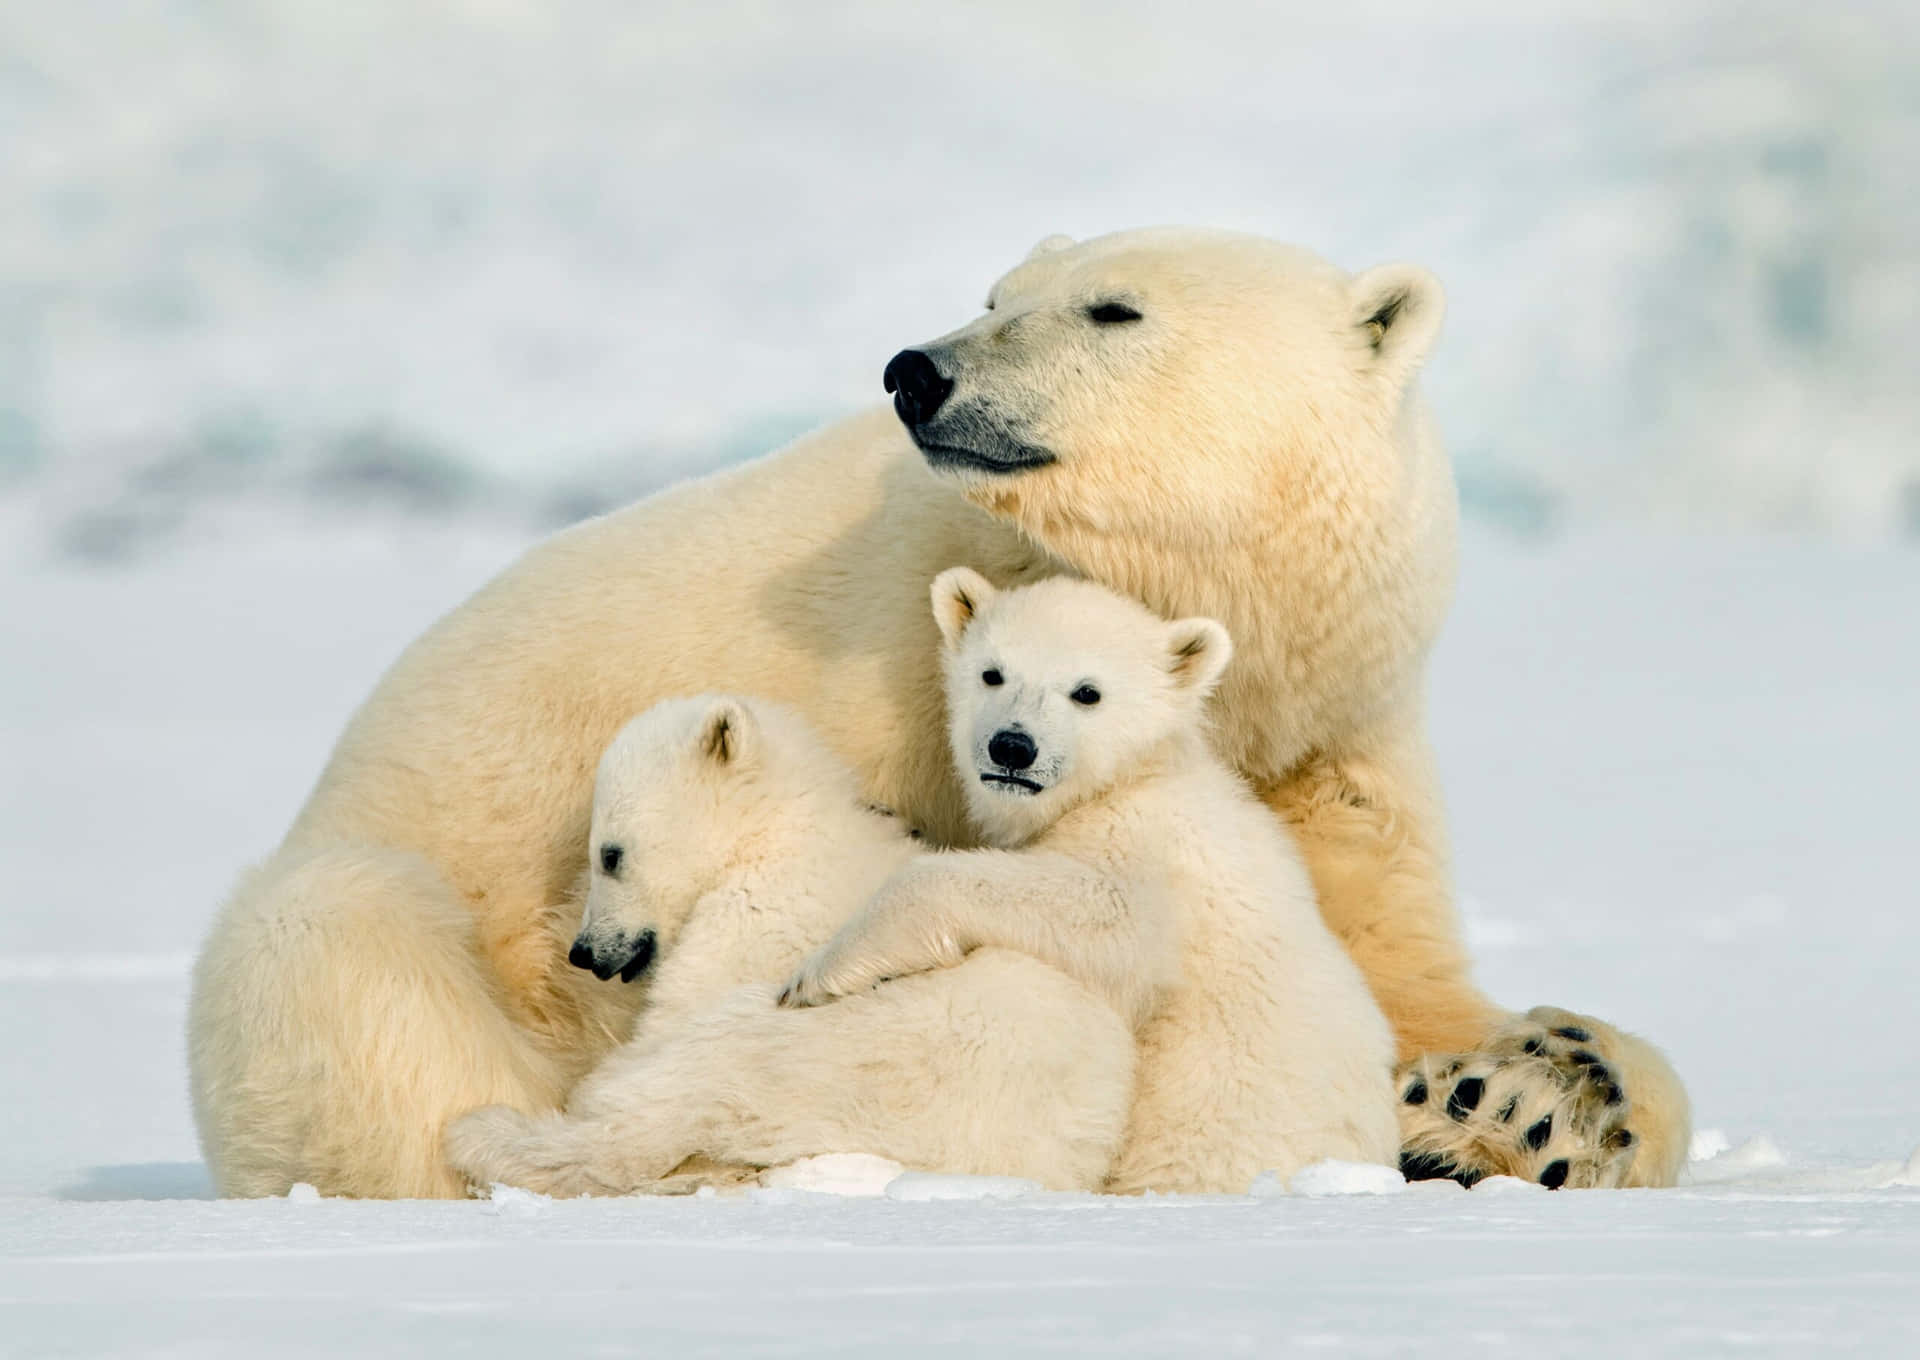 "A Curious Polar Bear Exploring Its Arctic Territory"